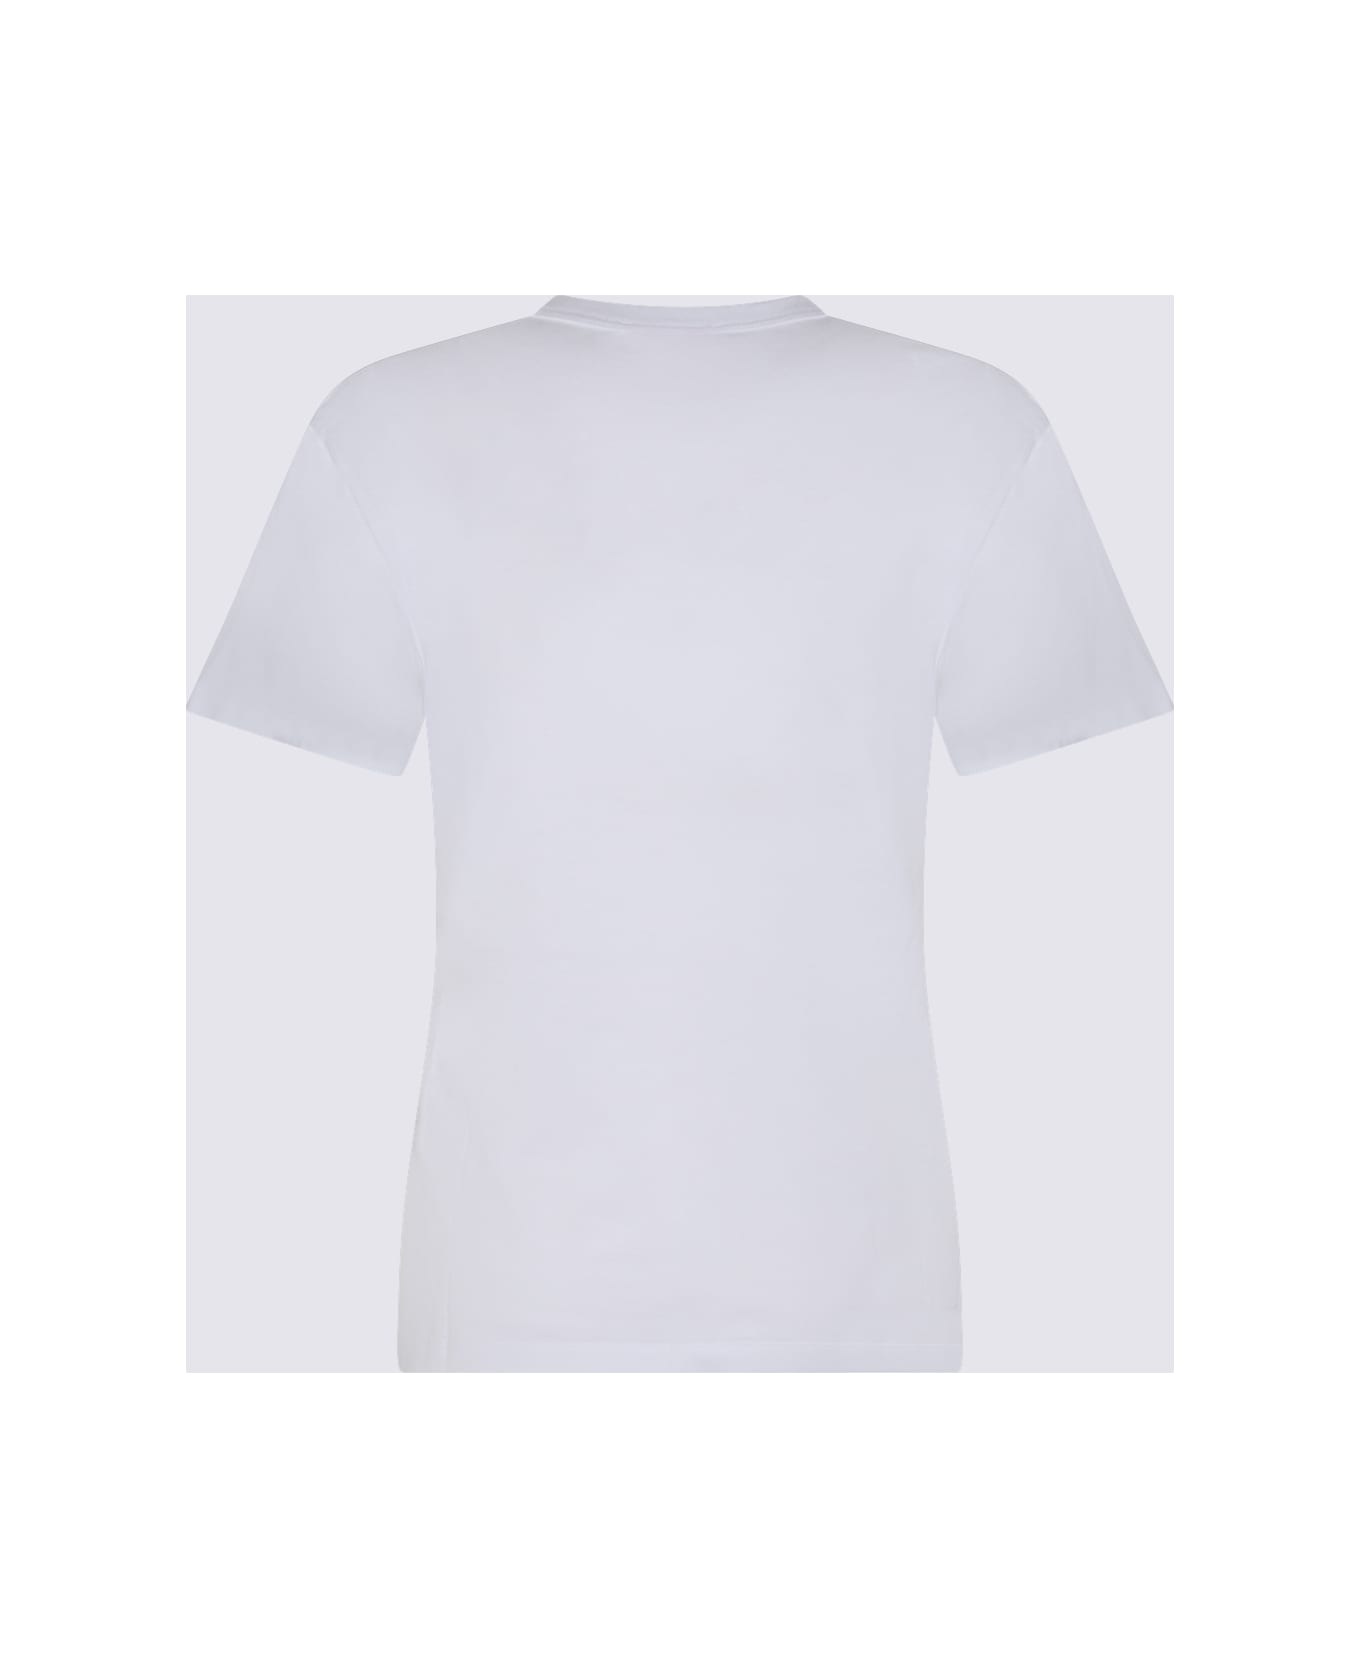 Pucci White Cotton T-shirt - White